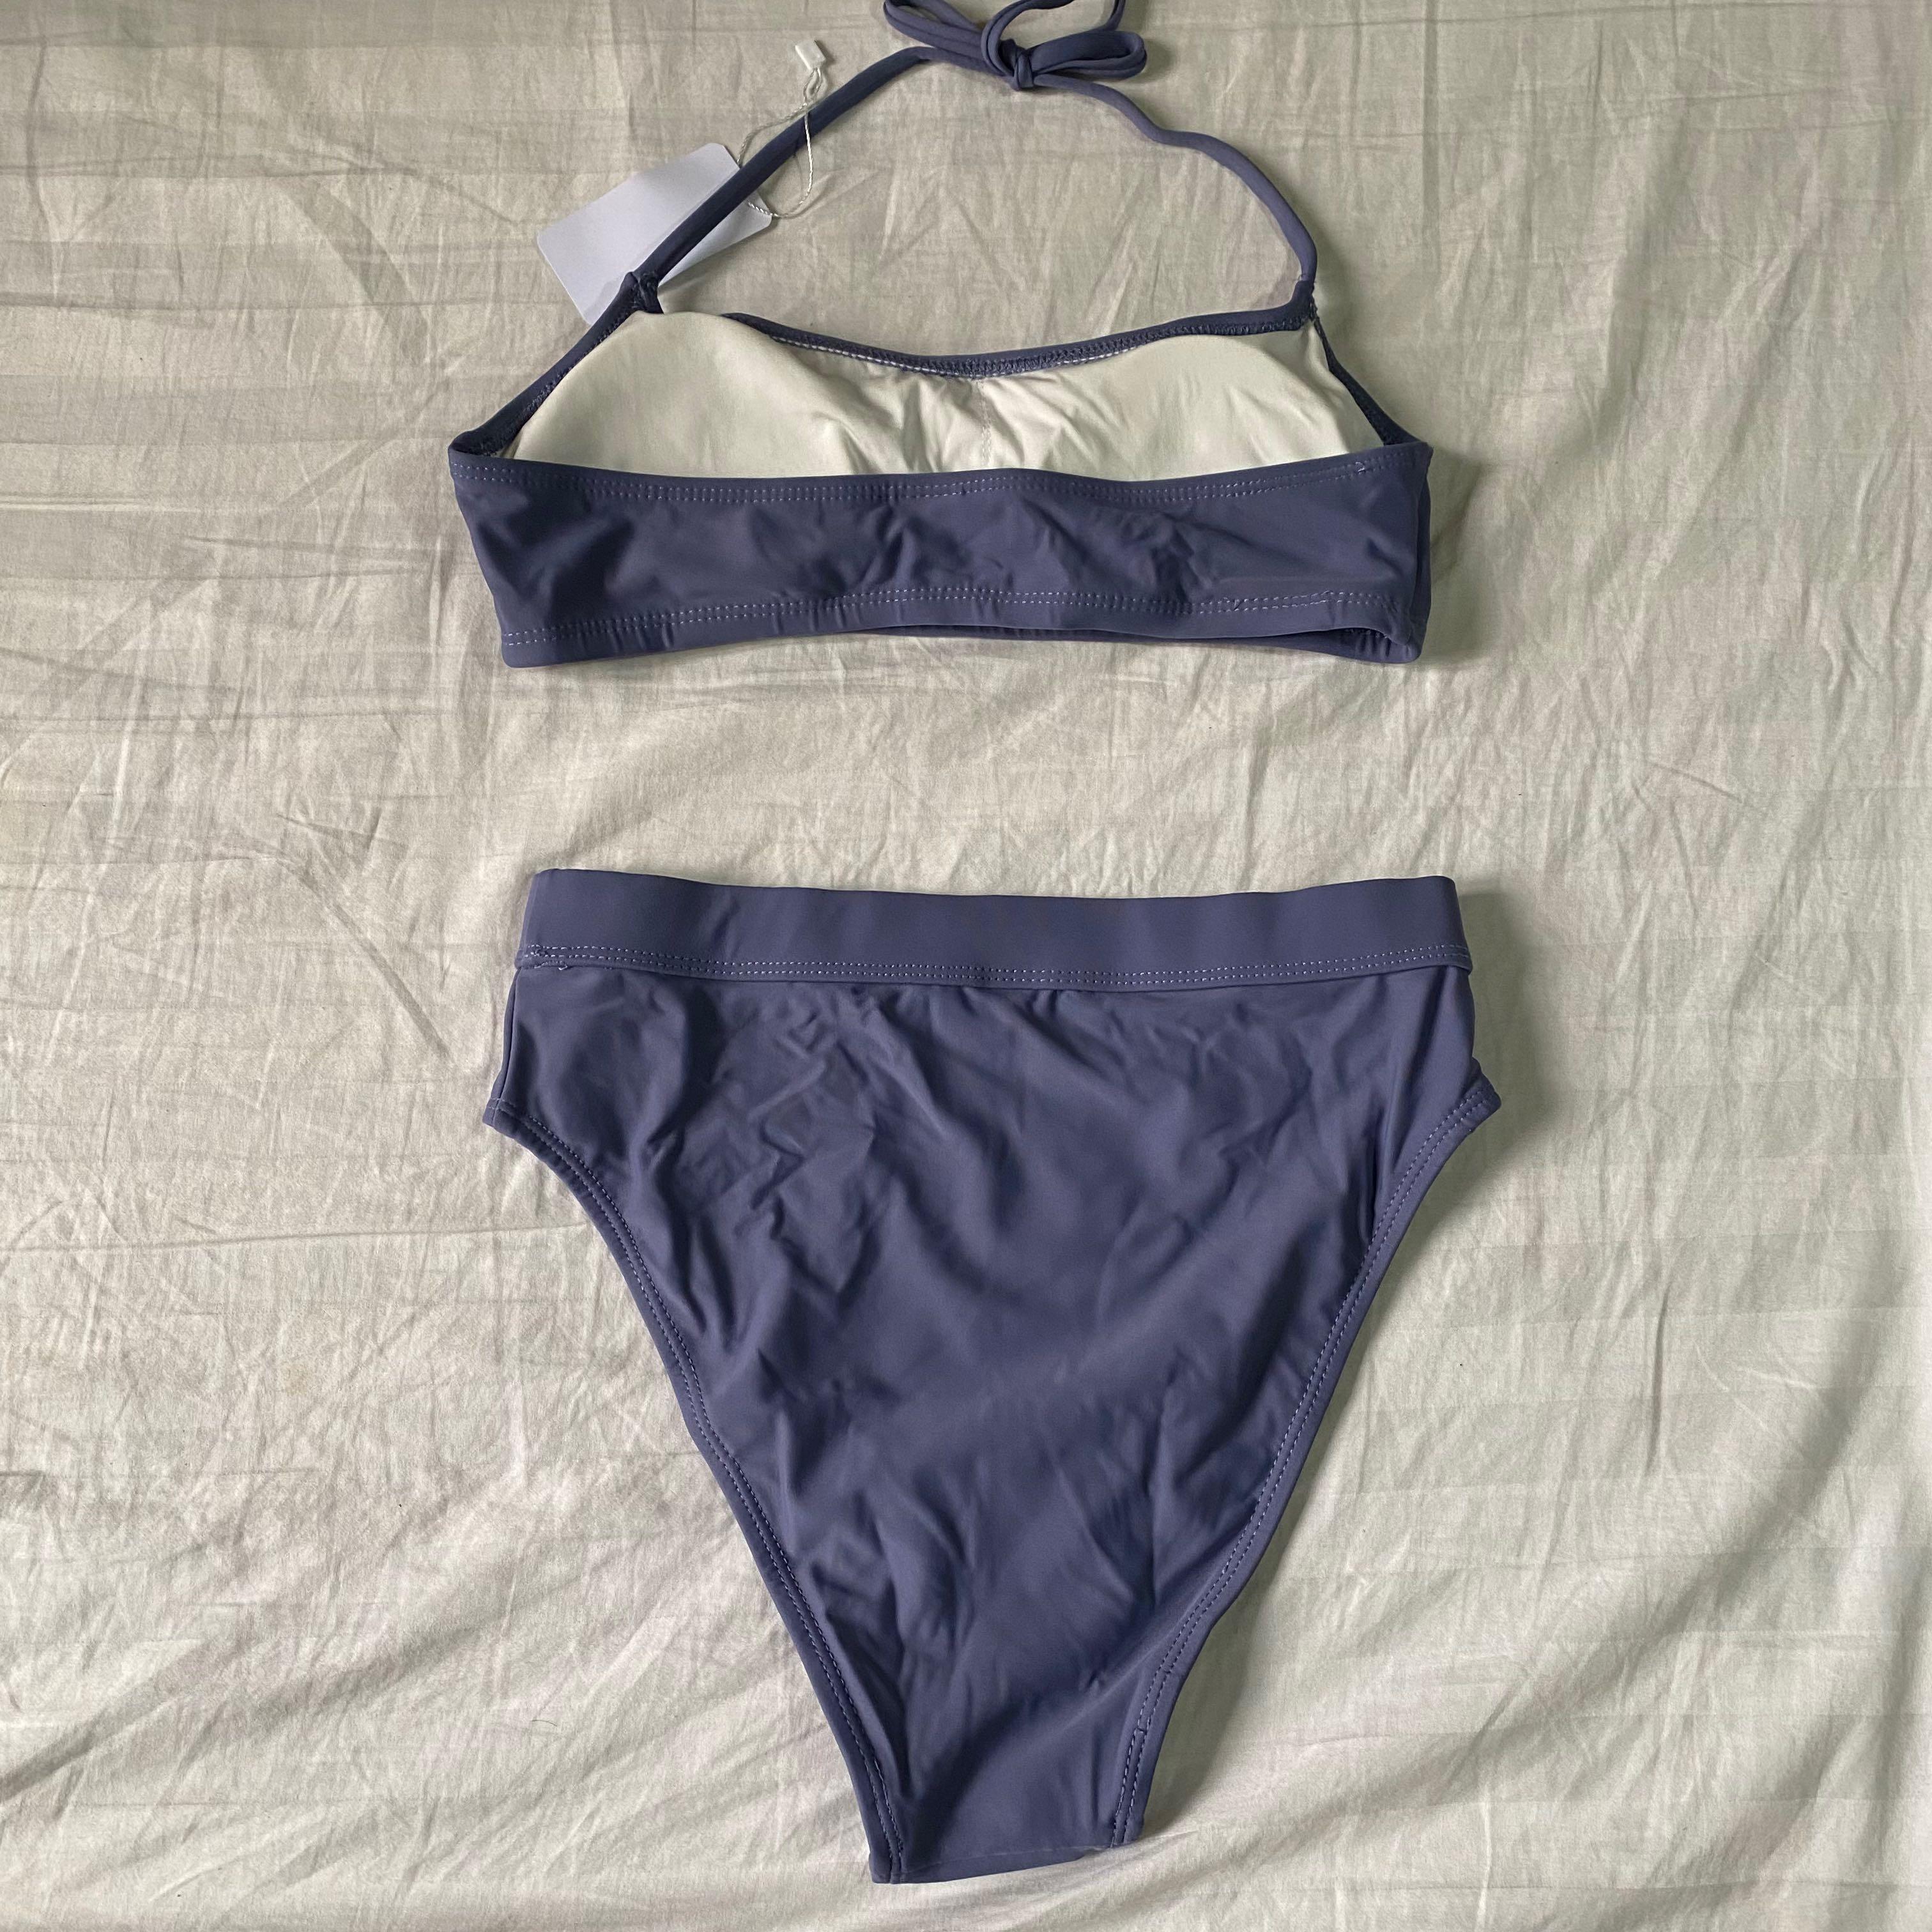 Nudeswim Toni Bikini Set in Slate, Women's Fashion, Swimwear, Bikinis ...